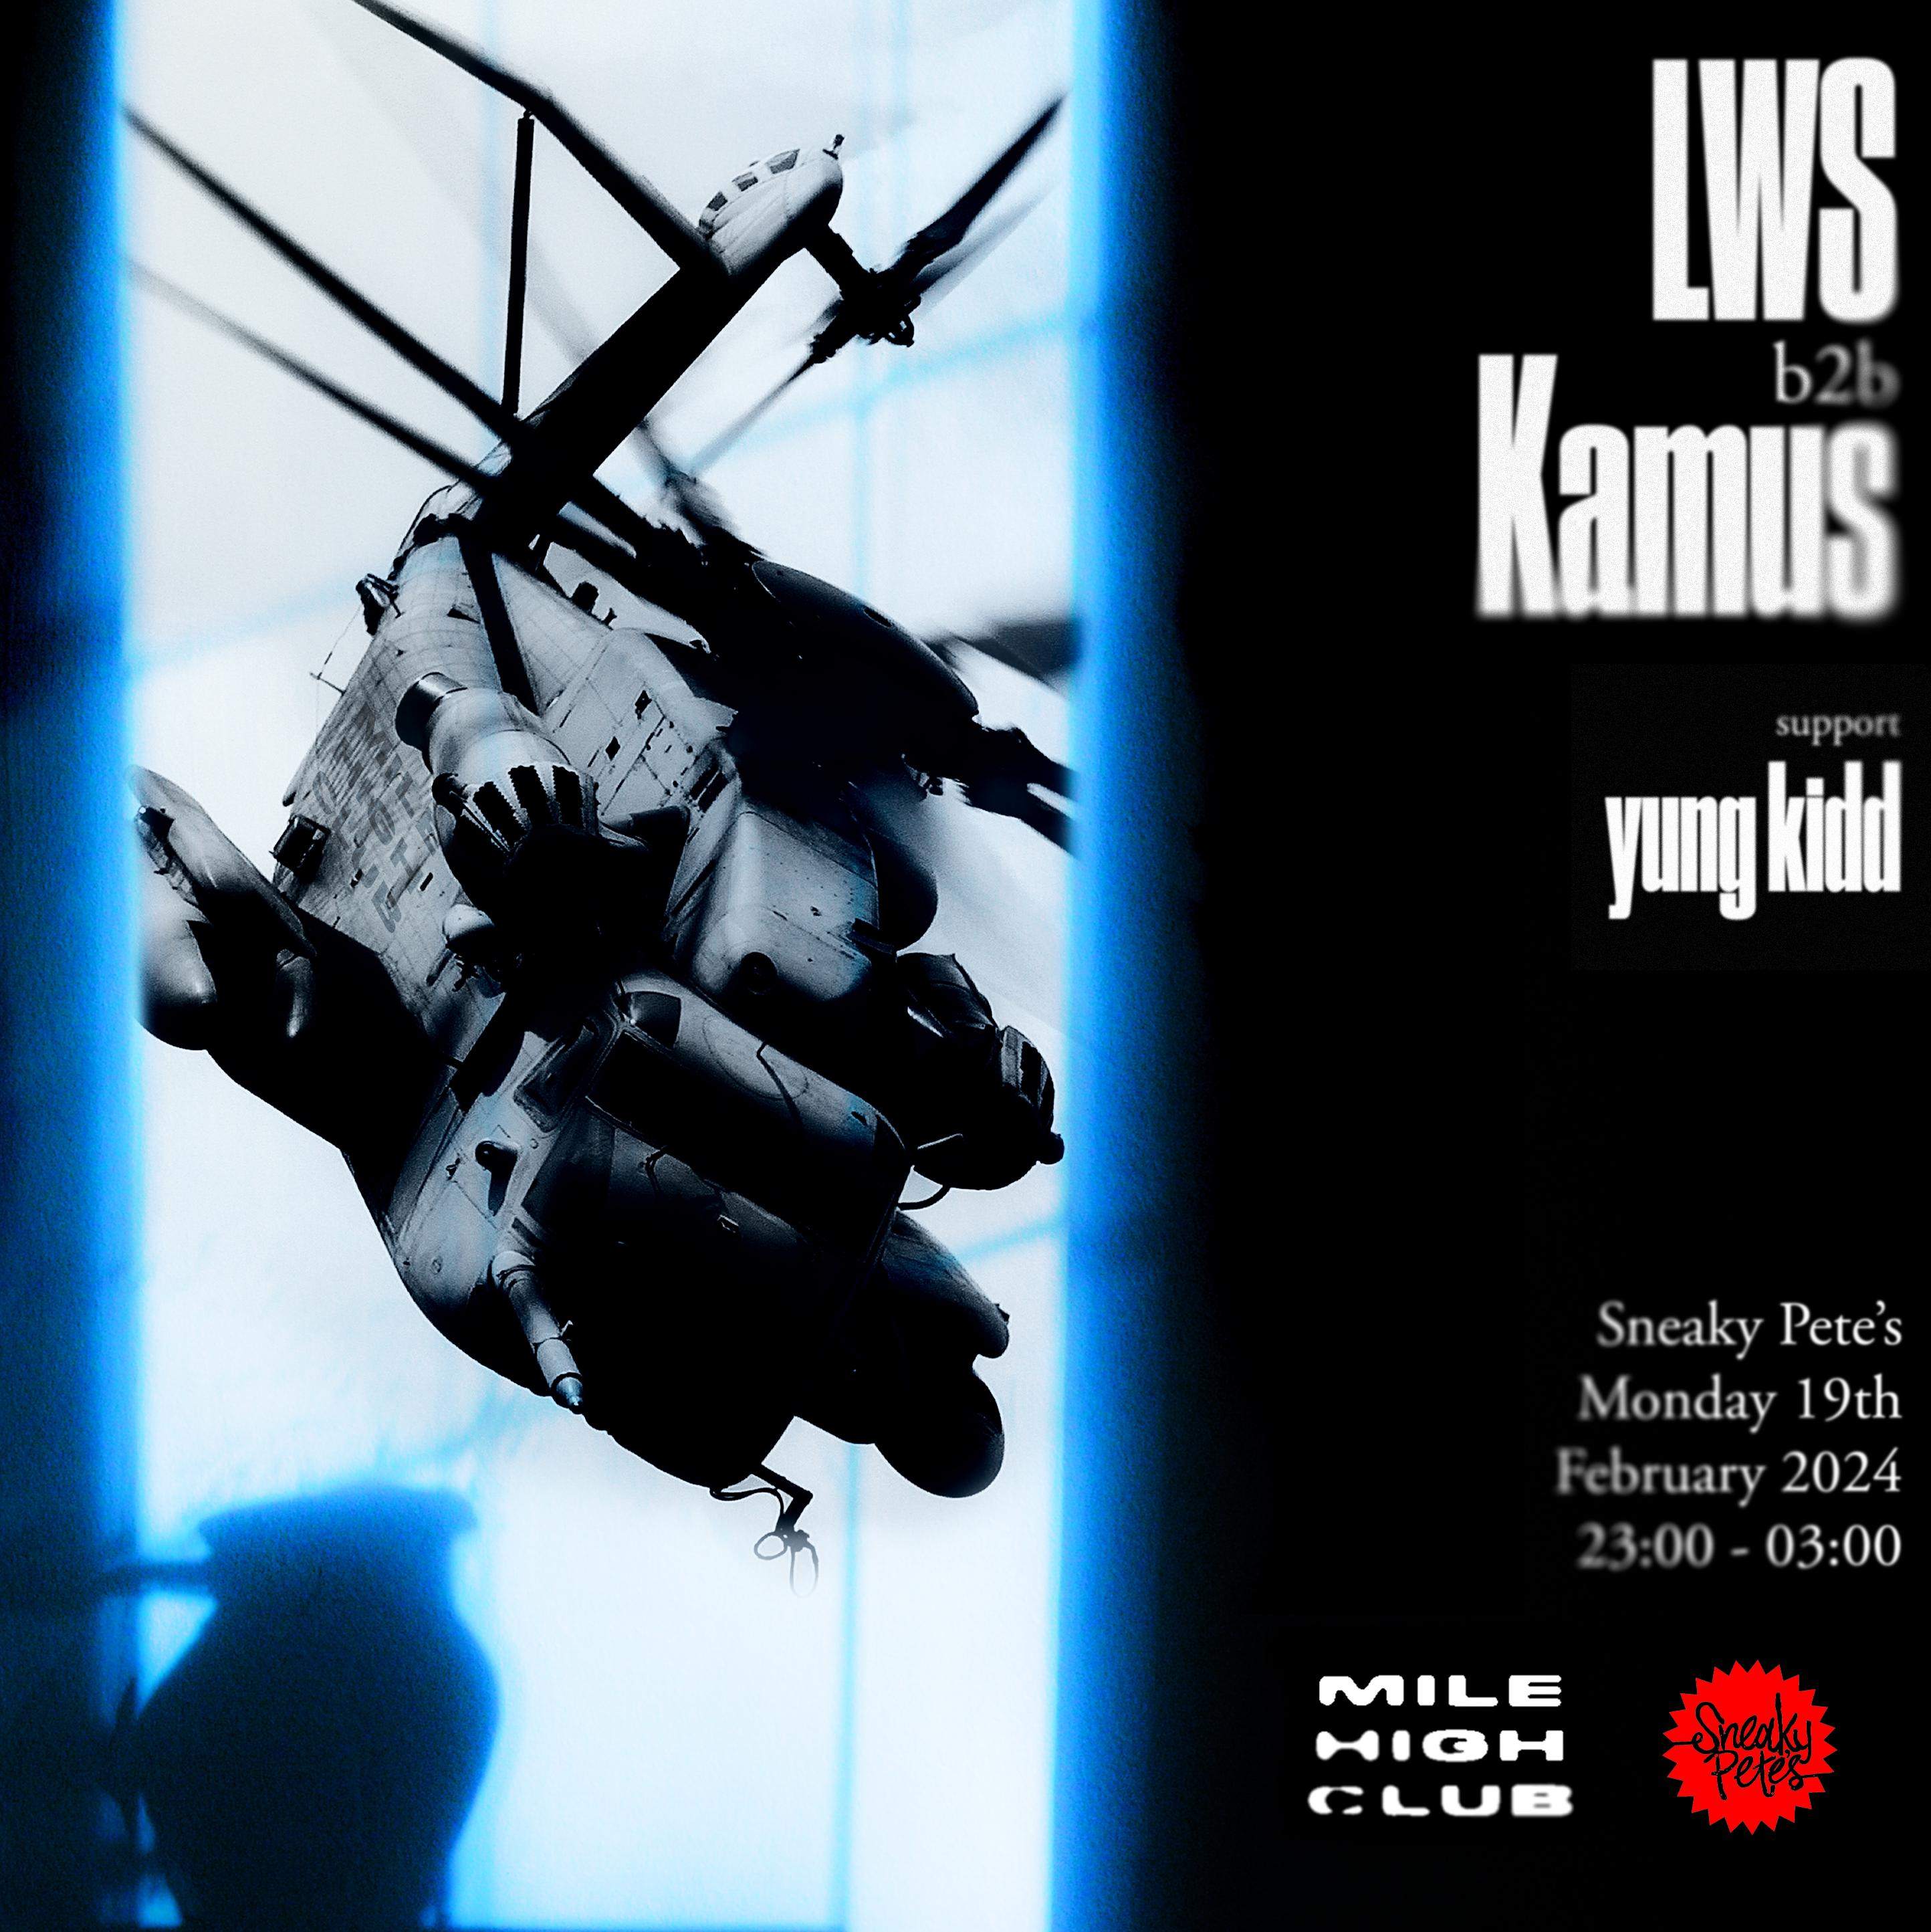 Mile High Club invites // LWS b2b Kamus, yung kidd - Página frontal